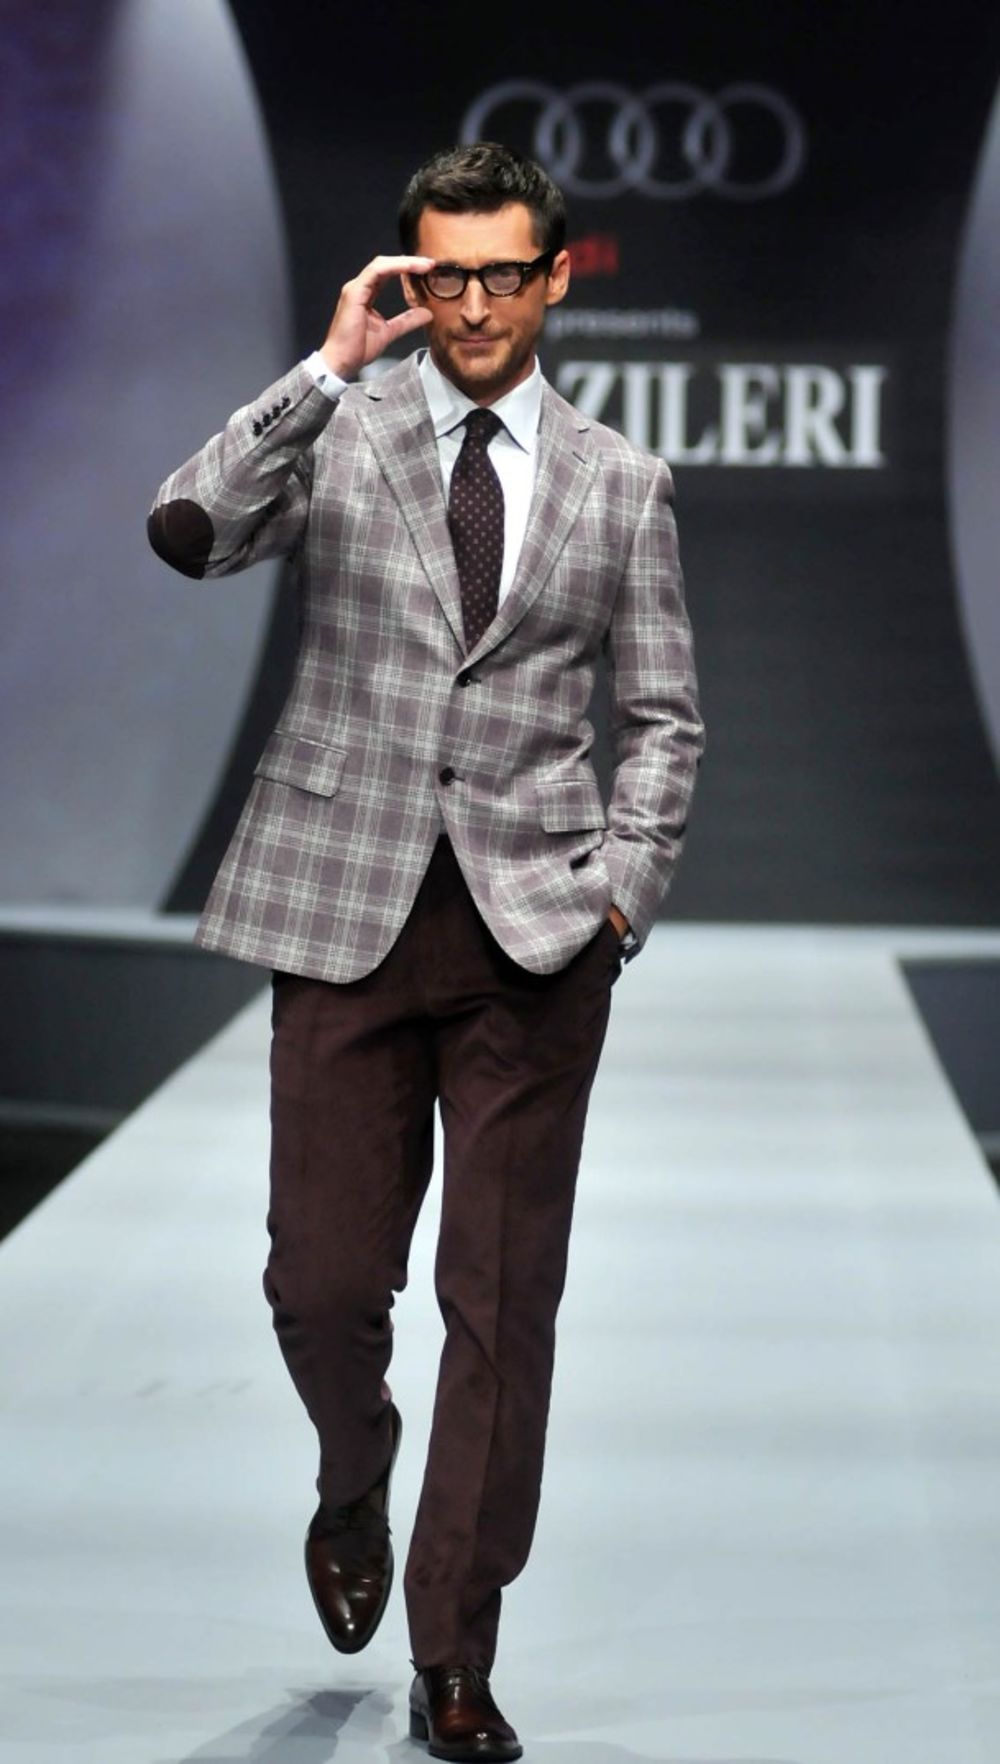 Vodeća italijanska kuća muške mode Pal Zileri dvadeset i osmi put prezentovala je aktuelnu kolekciju, a u ulozi manekena specijalno se pojavio i pevač Džej Ramadanovski